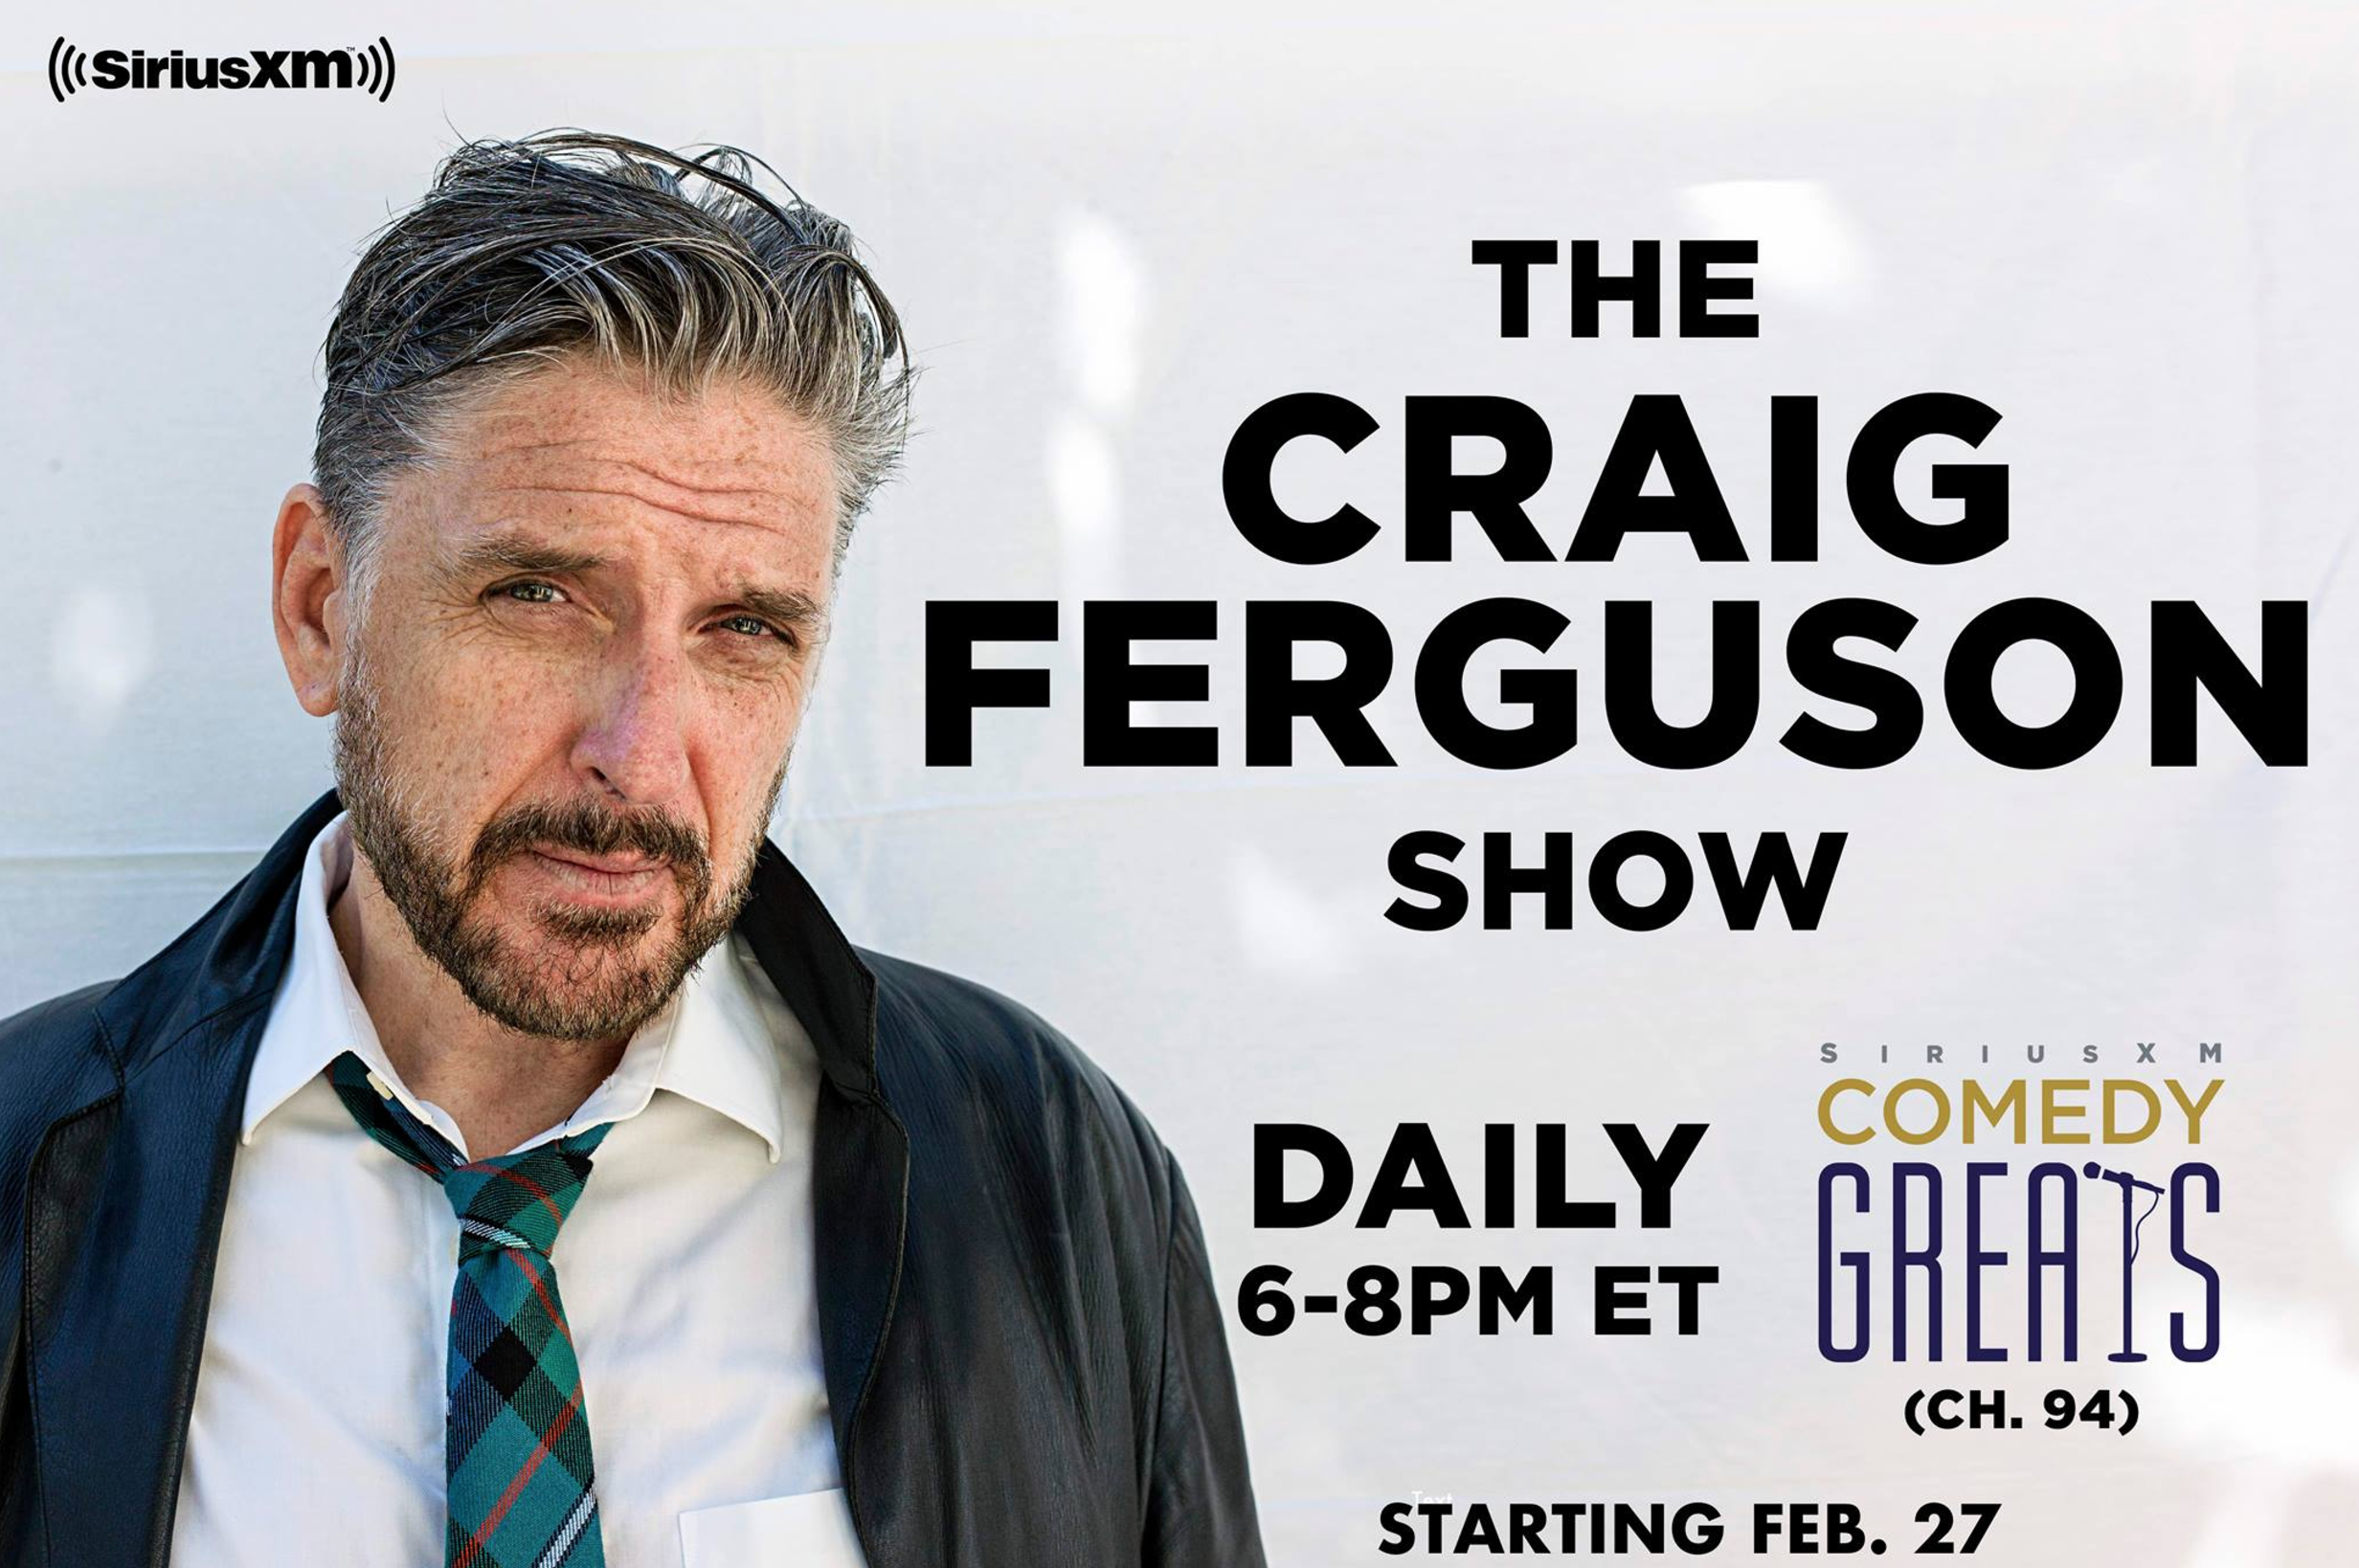 Promo for The Craig Ferguson Show